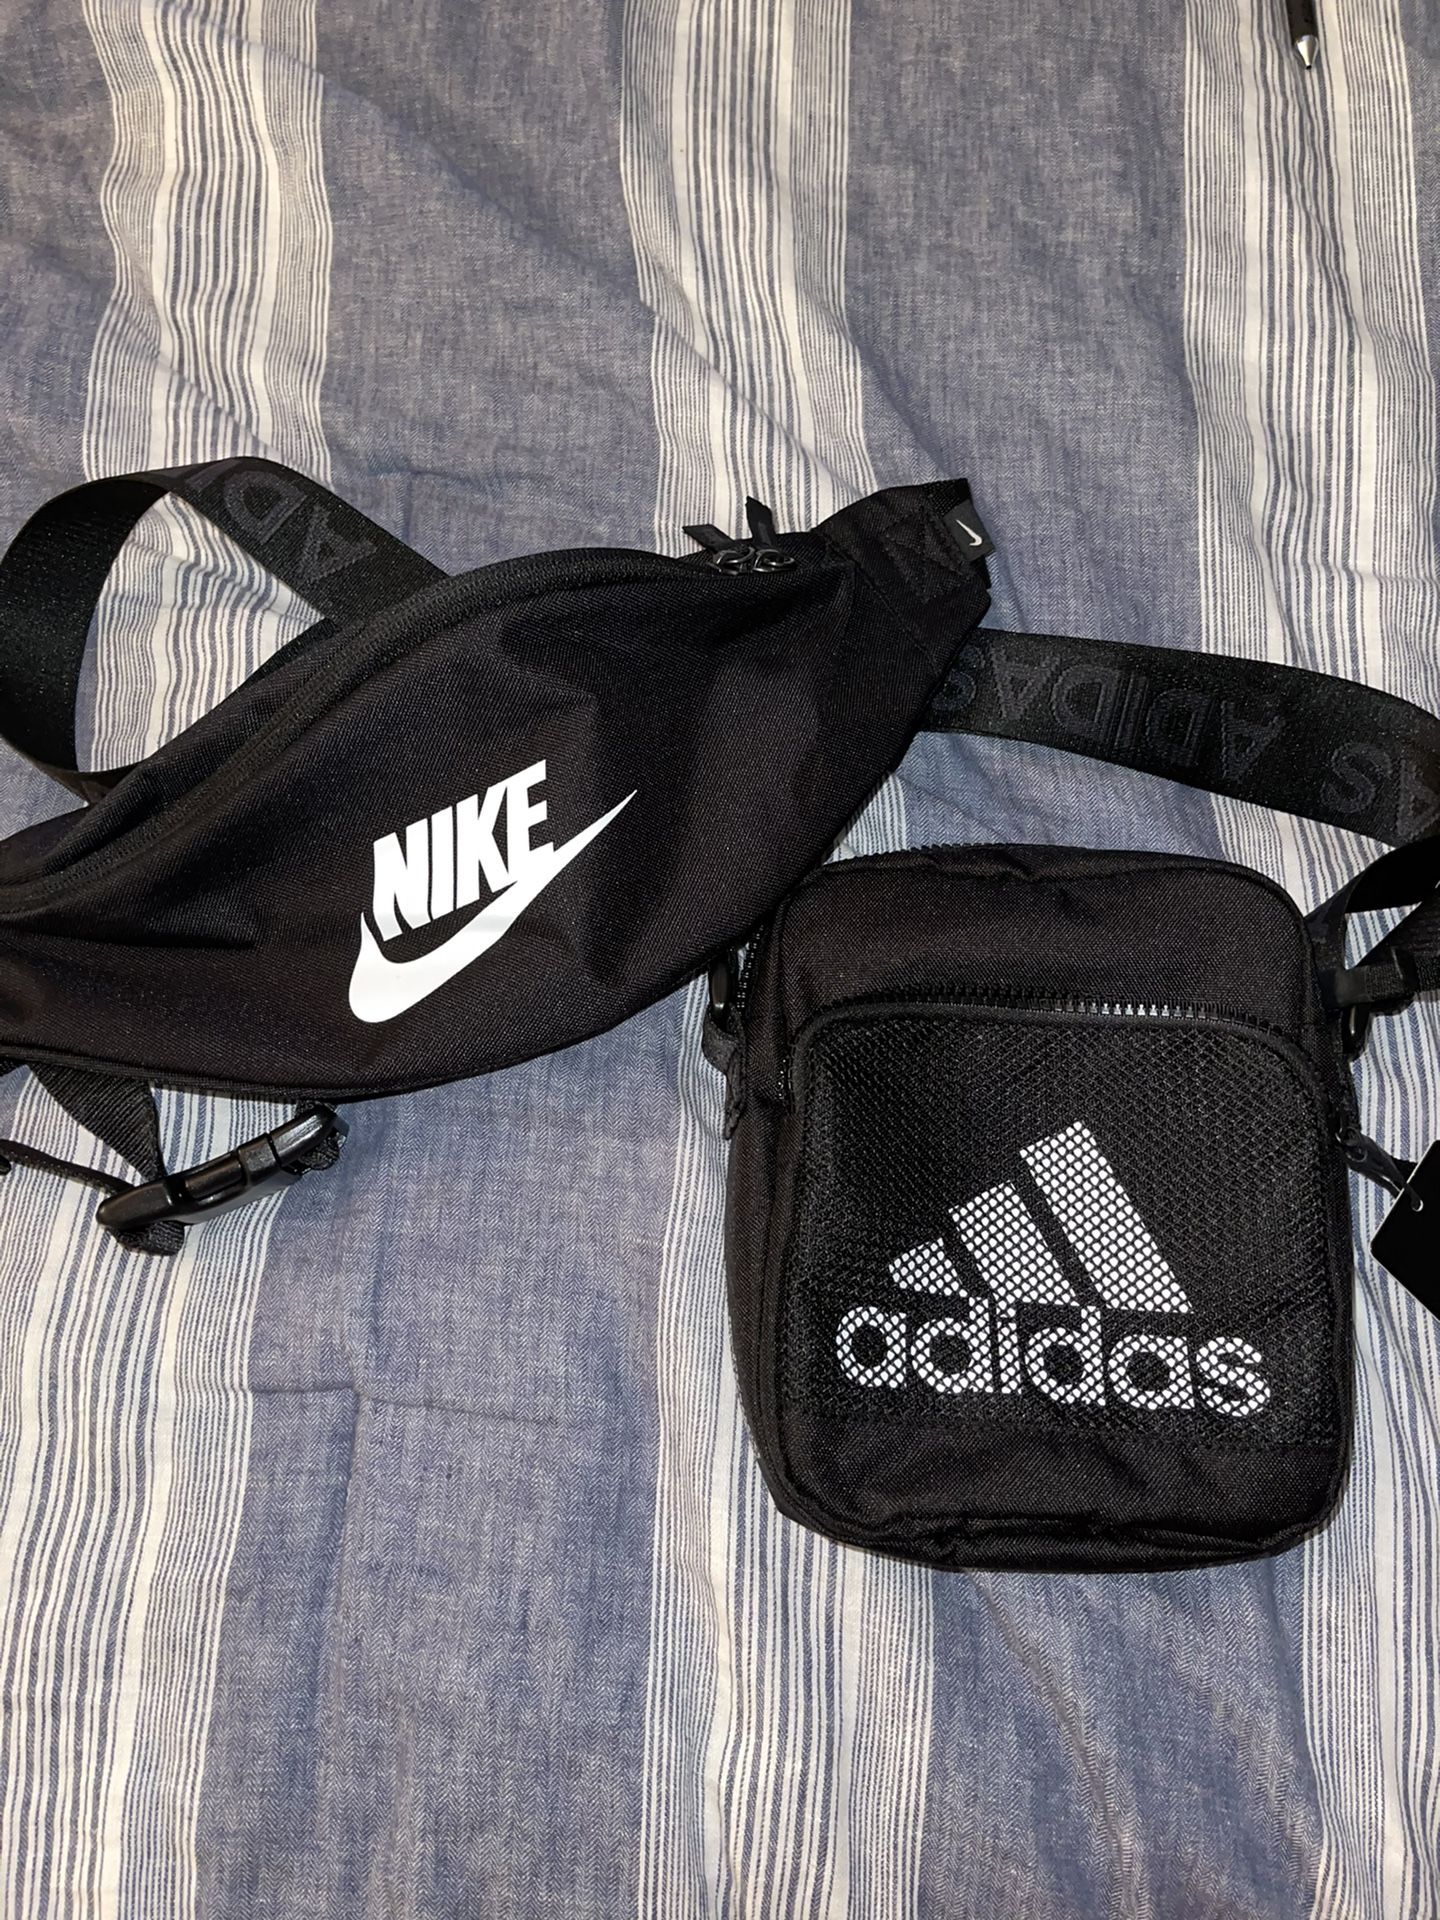 Nike And Adidas Bag